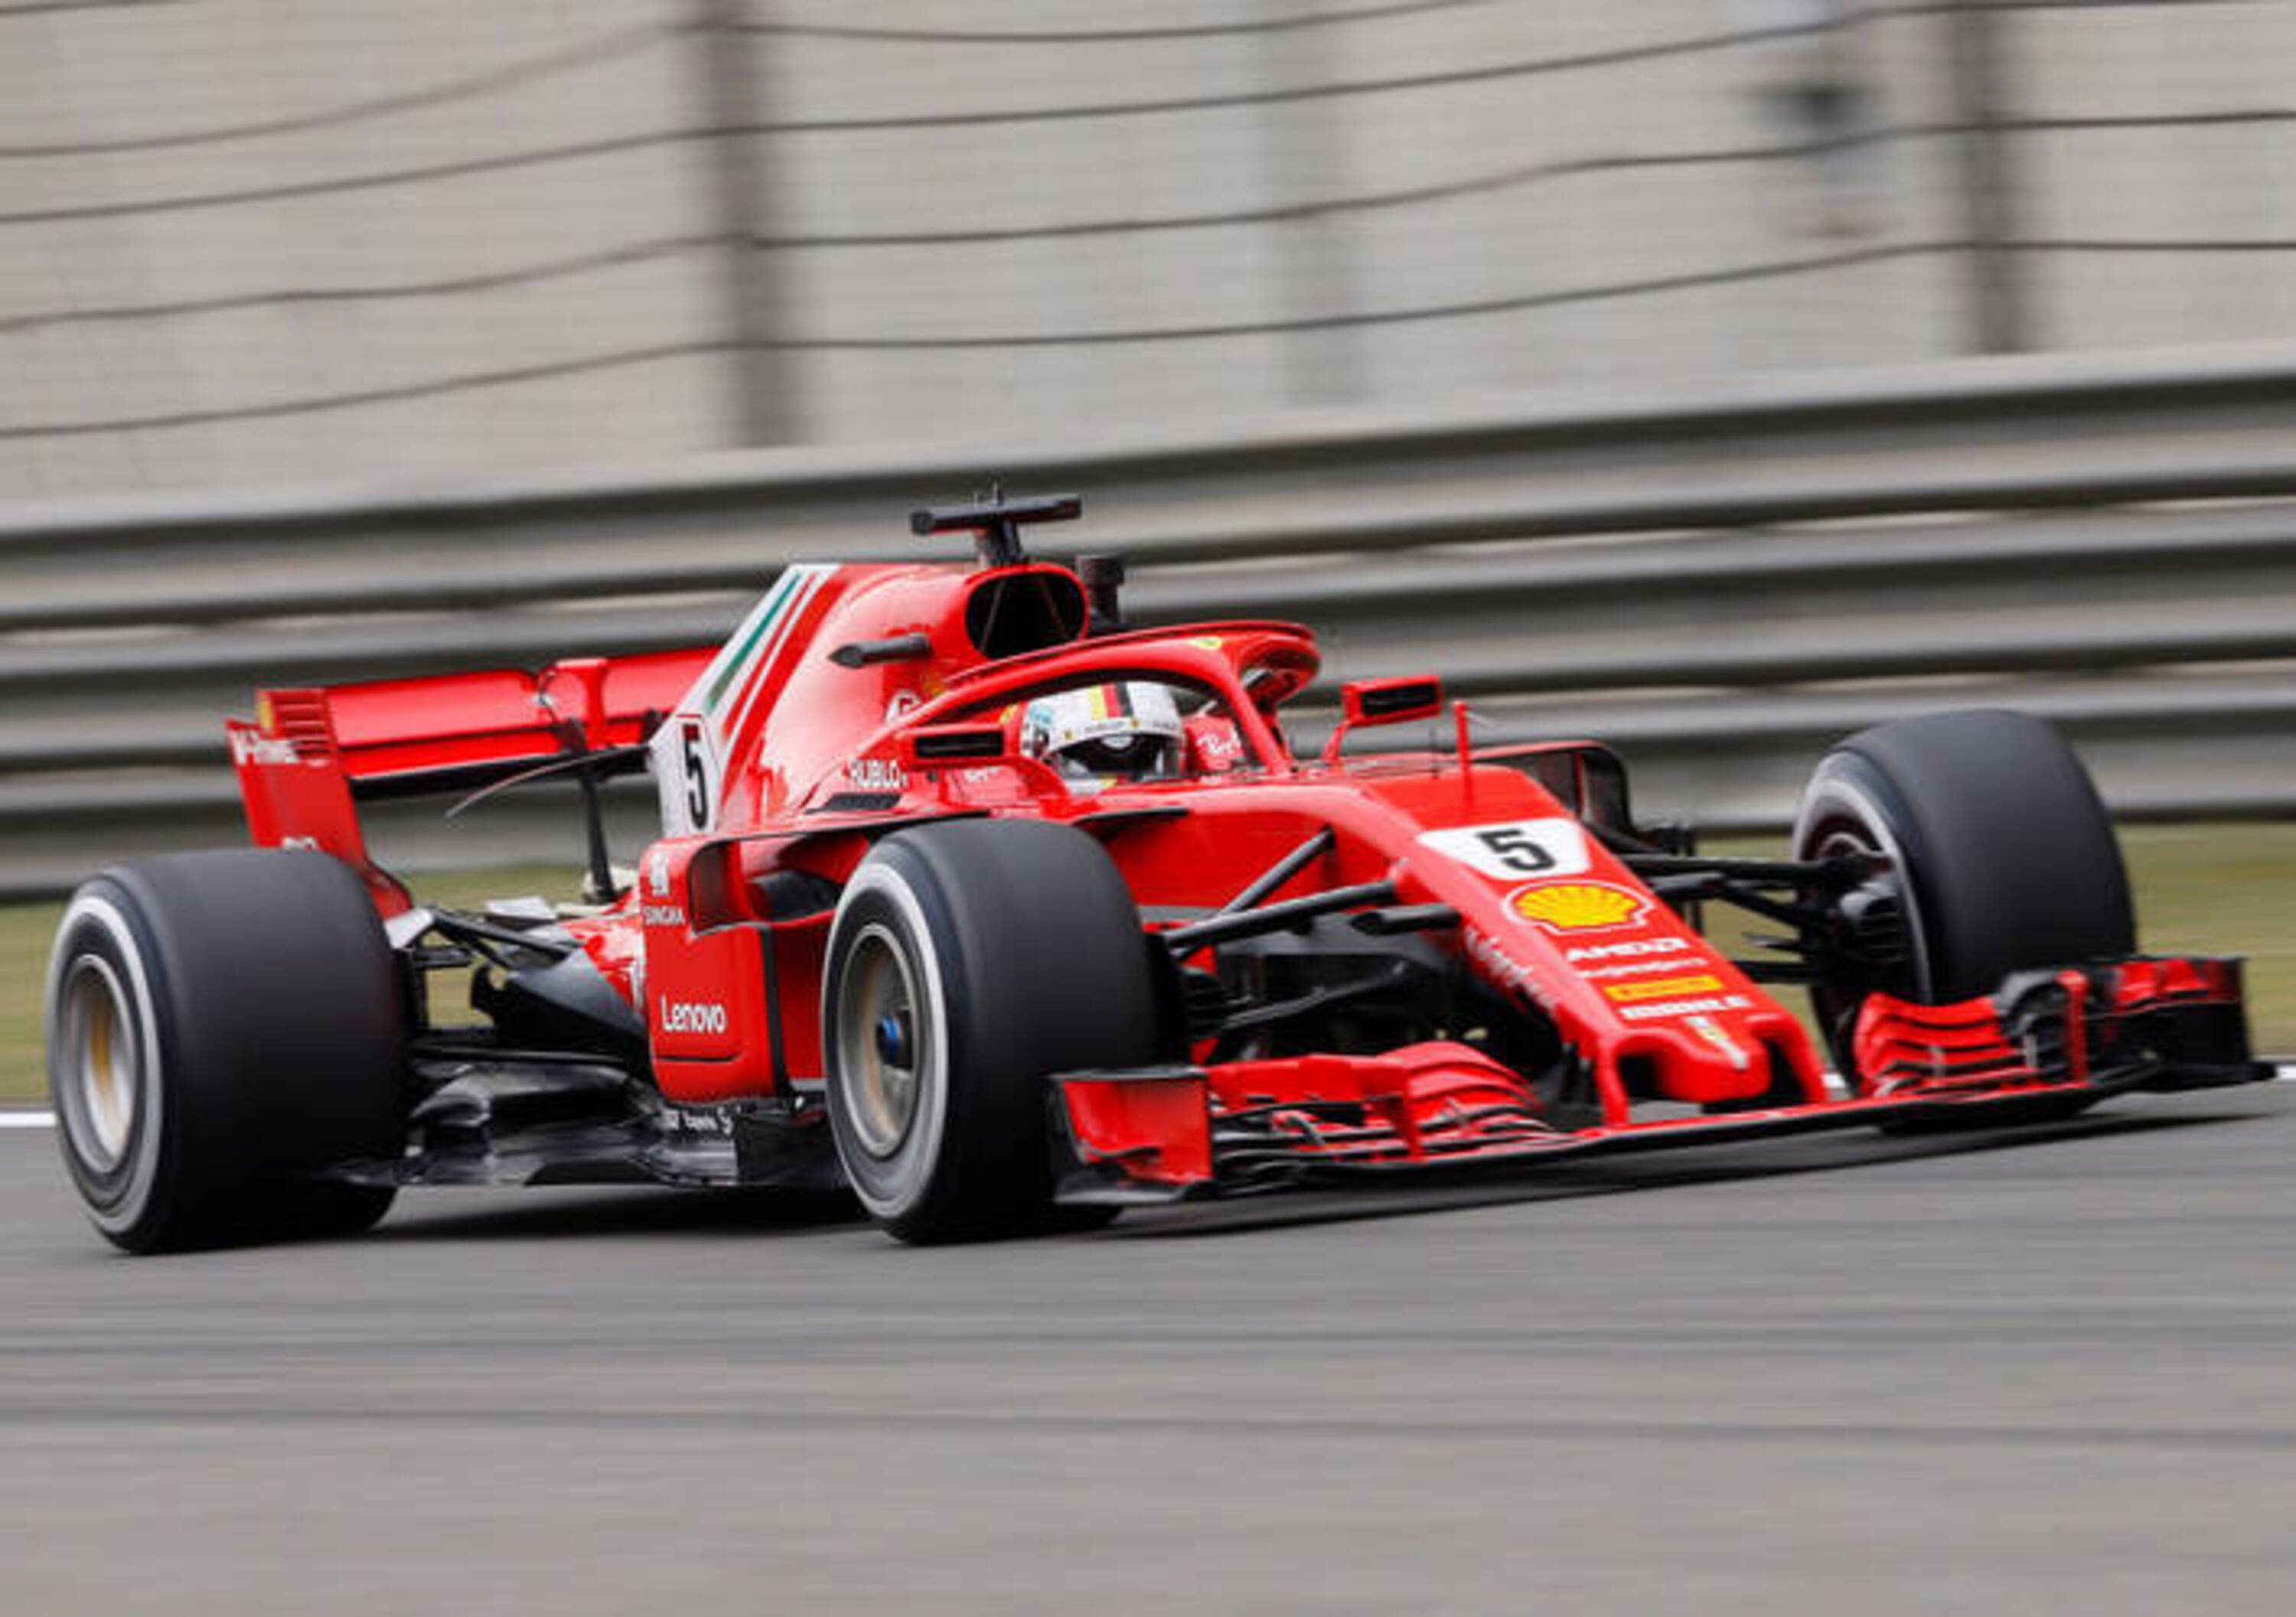 F1, Lauda denuncia il fumo della power unit Ferrari: &laquo;La FIA controlli&raquo;